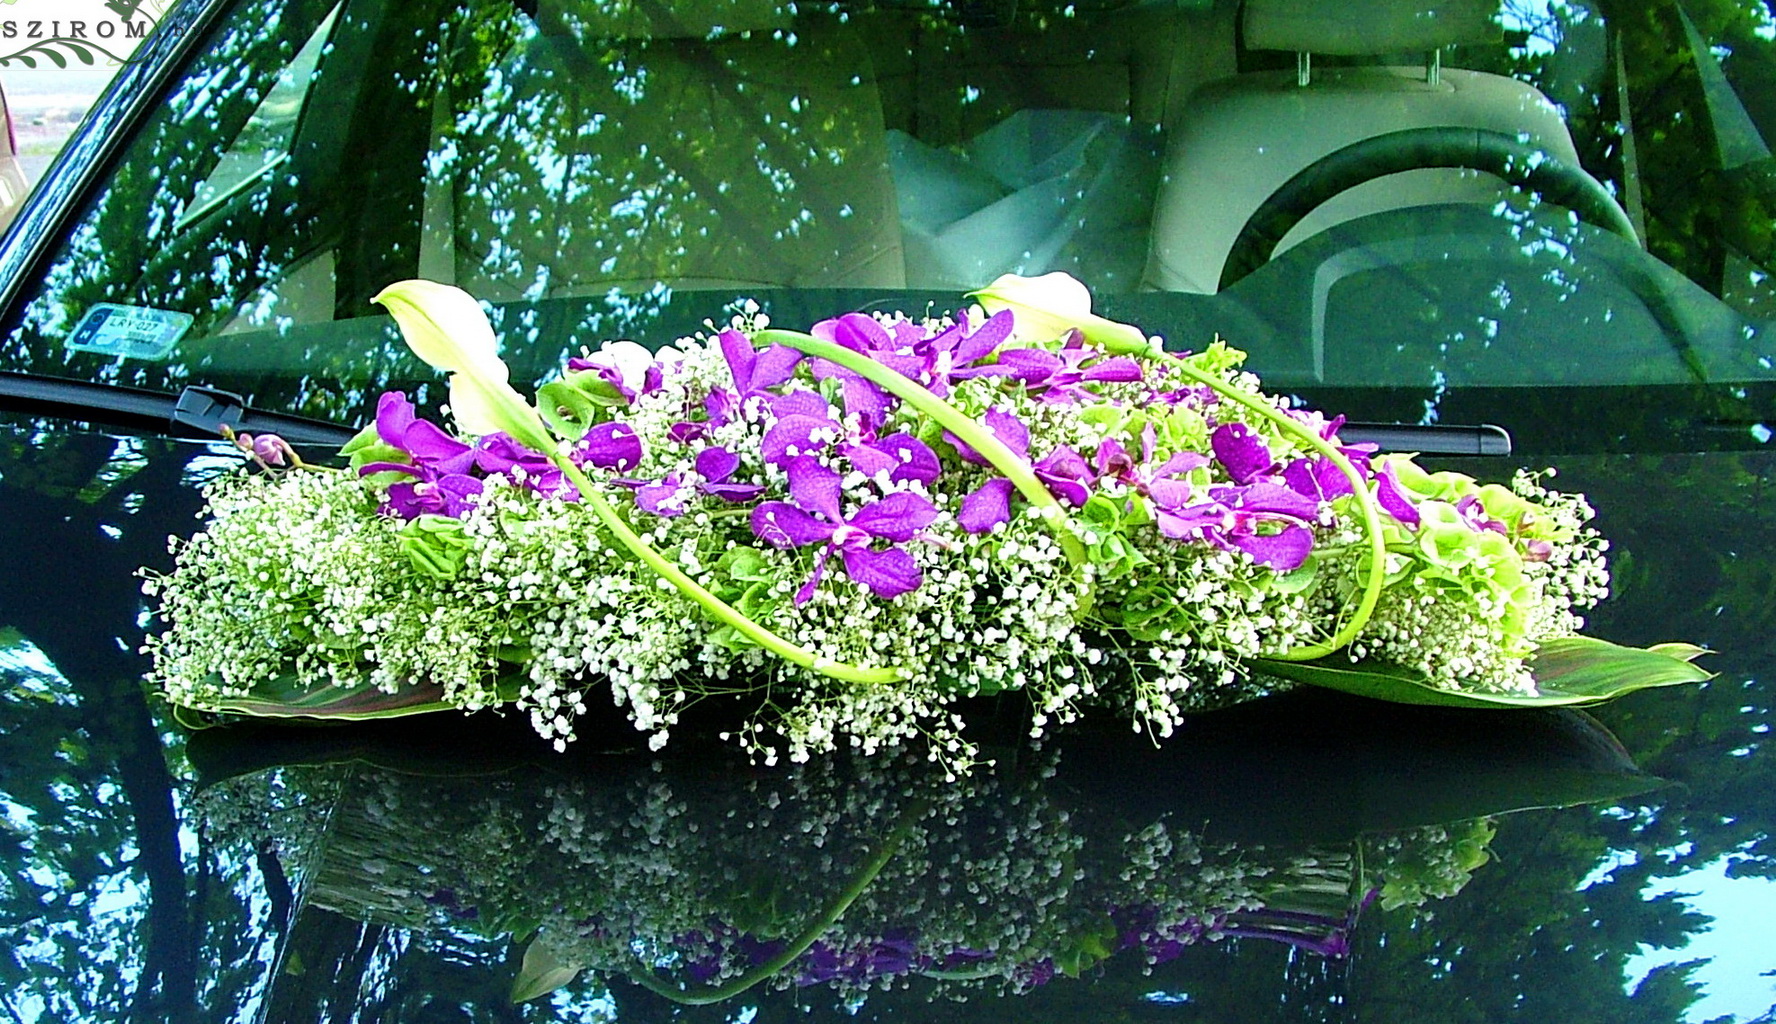 Virágküldés Budapest - ovális autódísz (Dendrobium orchidea, kála, rezgő, fehér, rózsaszín)